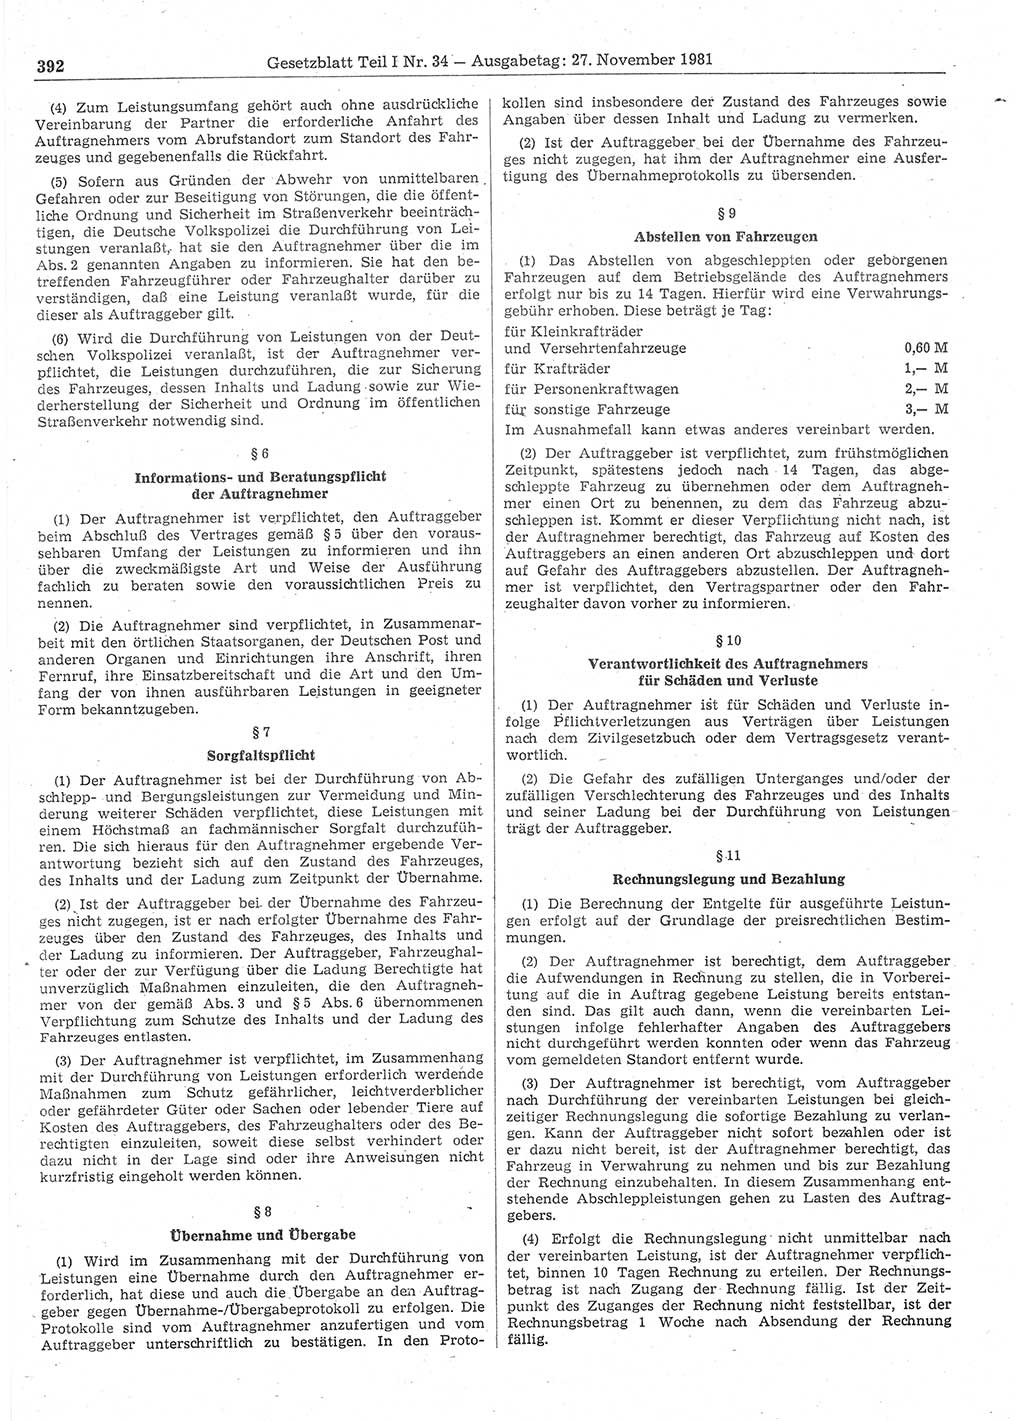 Gesetzblatt (GBl.) der Deutschen Demokratischen Republik (DDR) Teil Ⅰ 1981, Seite 392 (GBl. DDR Ⅰ 1981, S. 392)